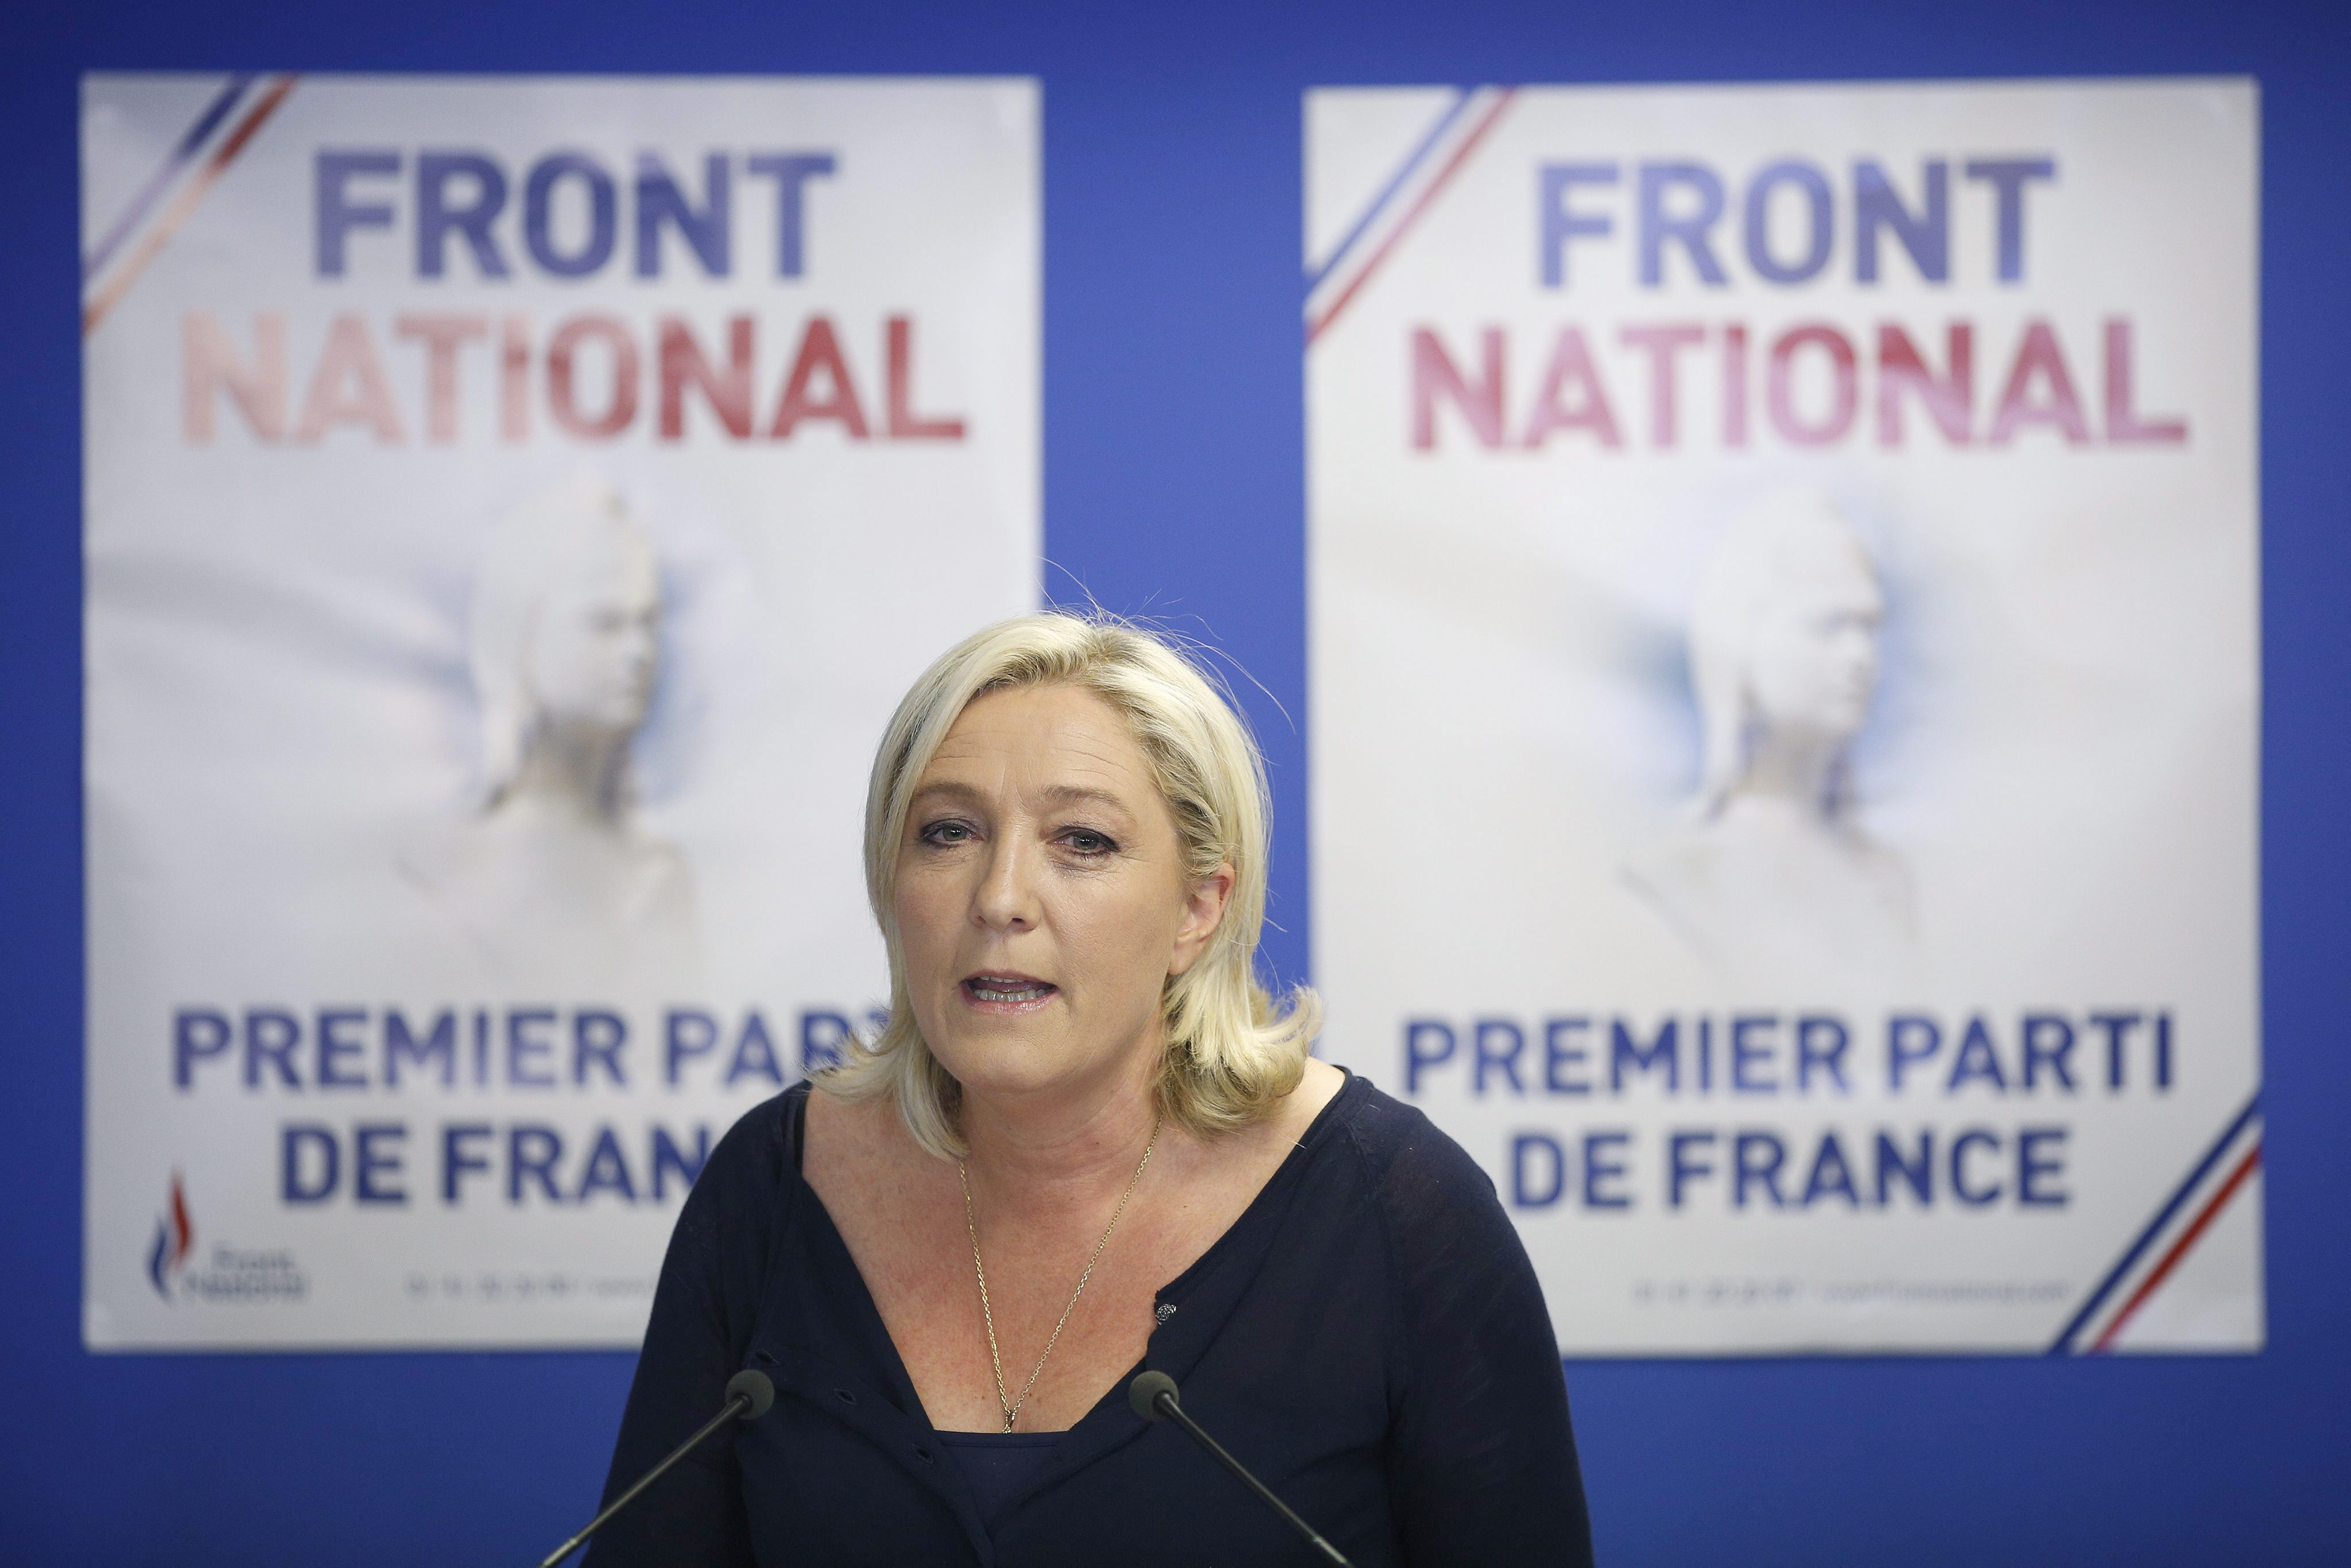 Elecciones europeas 2014: Ningún sondeo en Francia había previsto la amplitud de la victoria de Le Pen